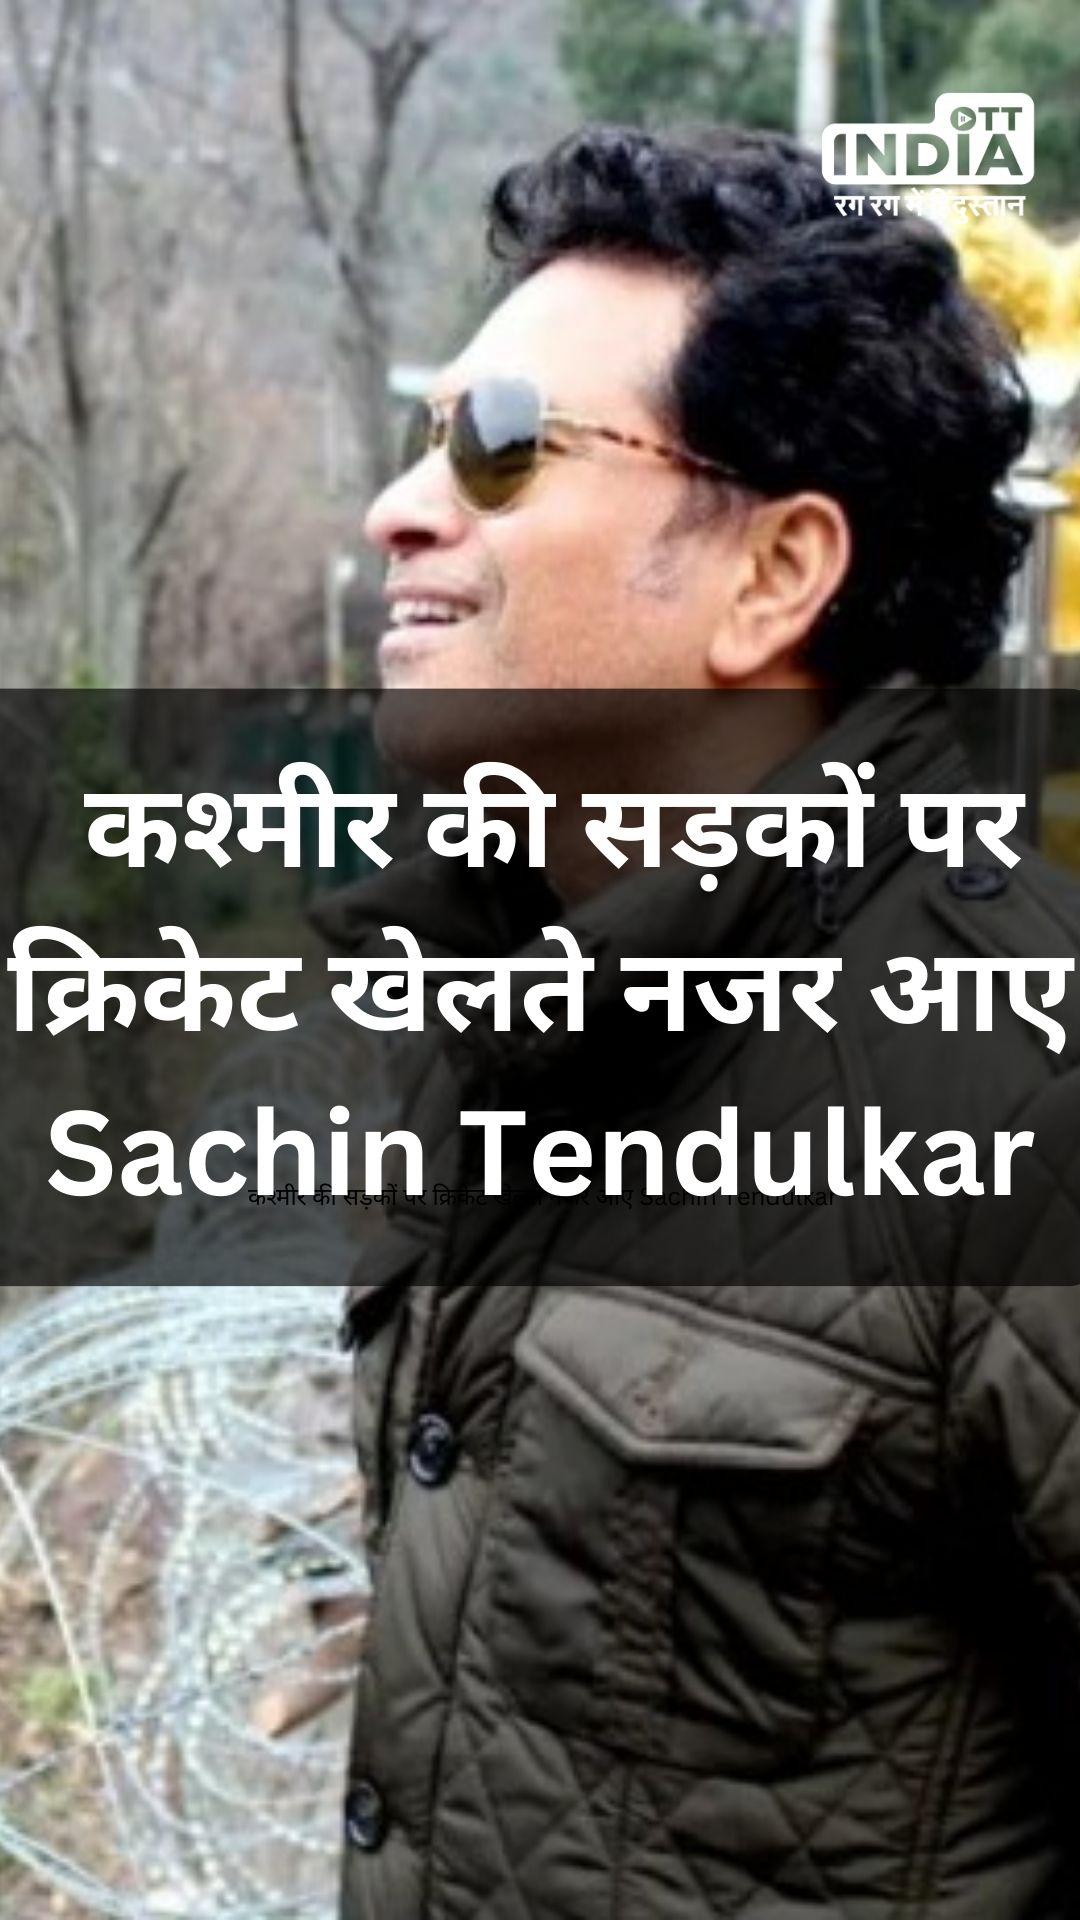 कश्मीर की सड़कों पर क्रिकेट खेलते नजर आए Sachin Tendulkar